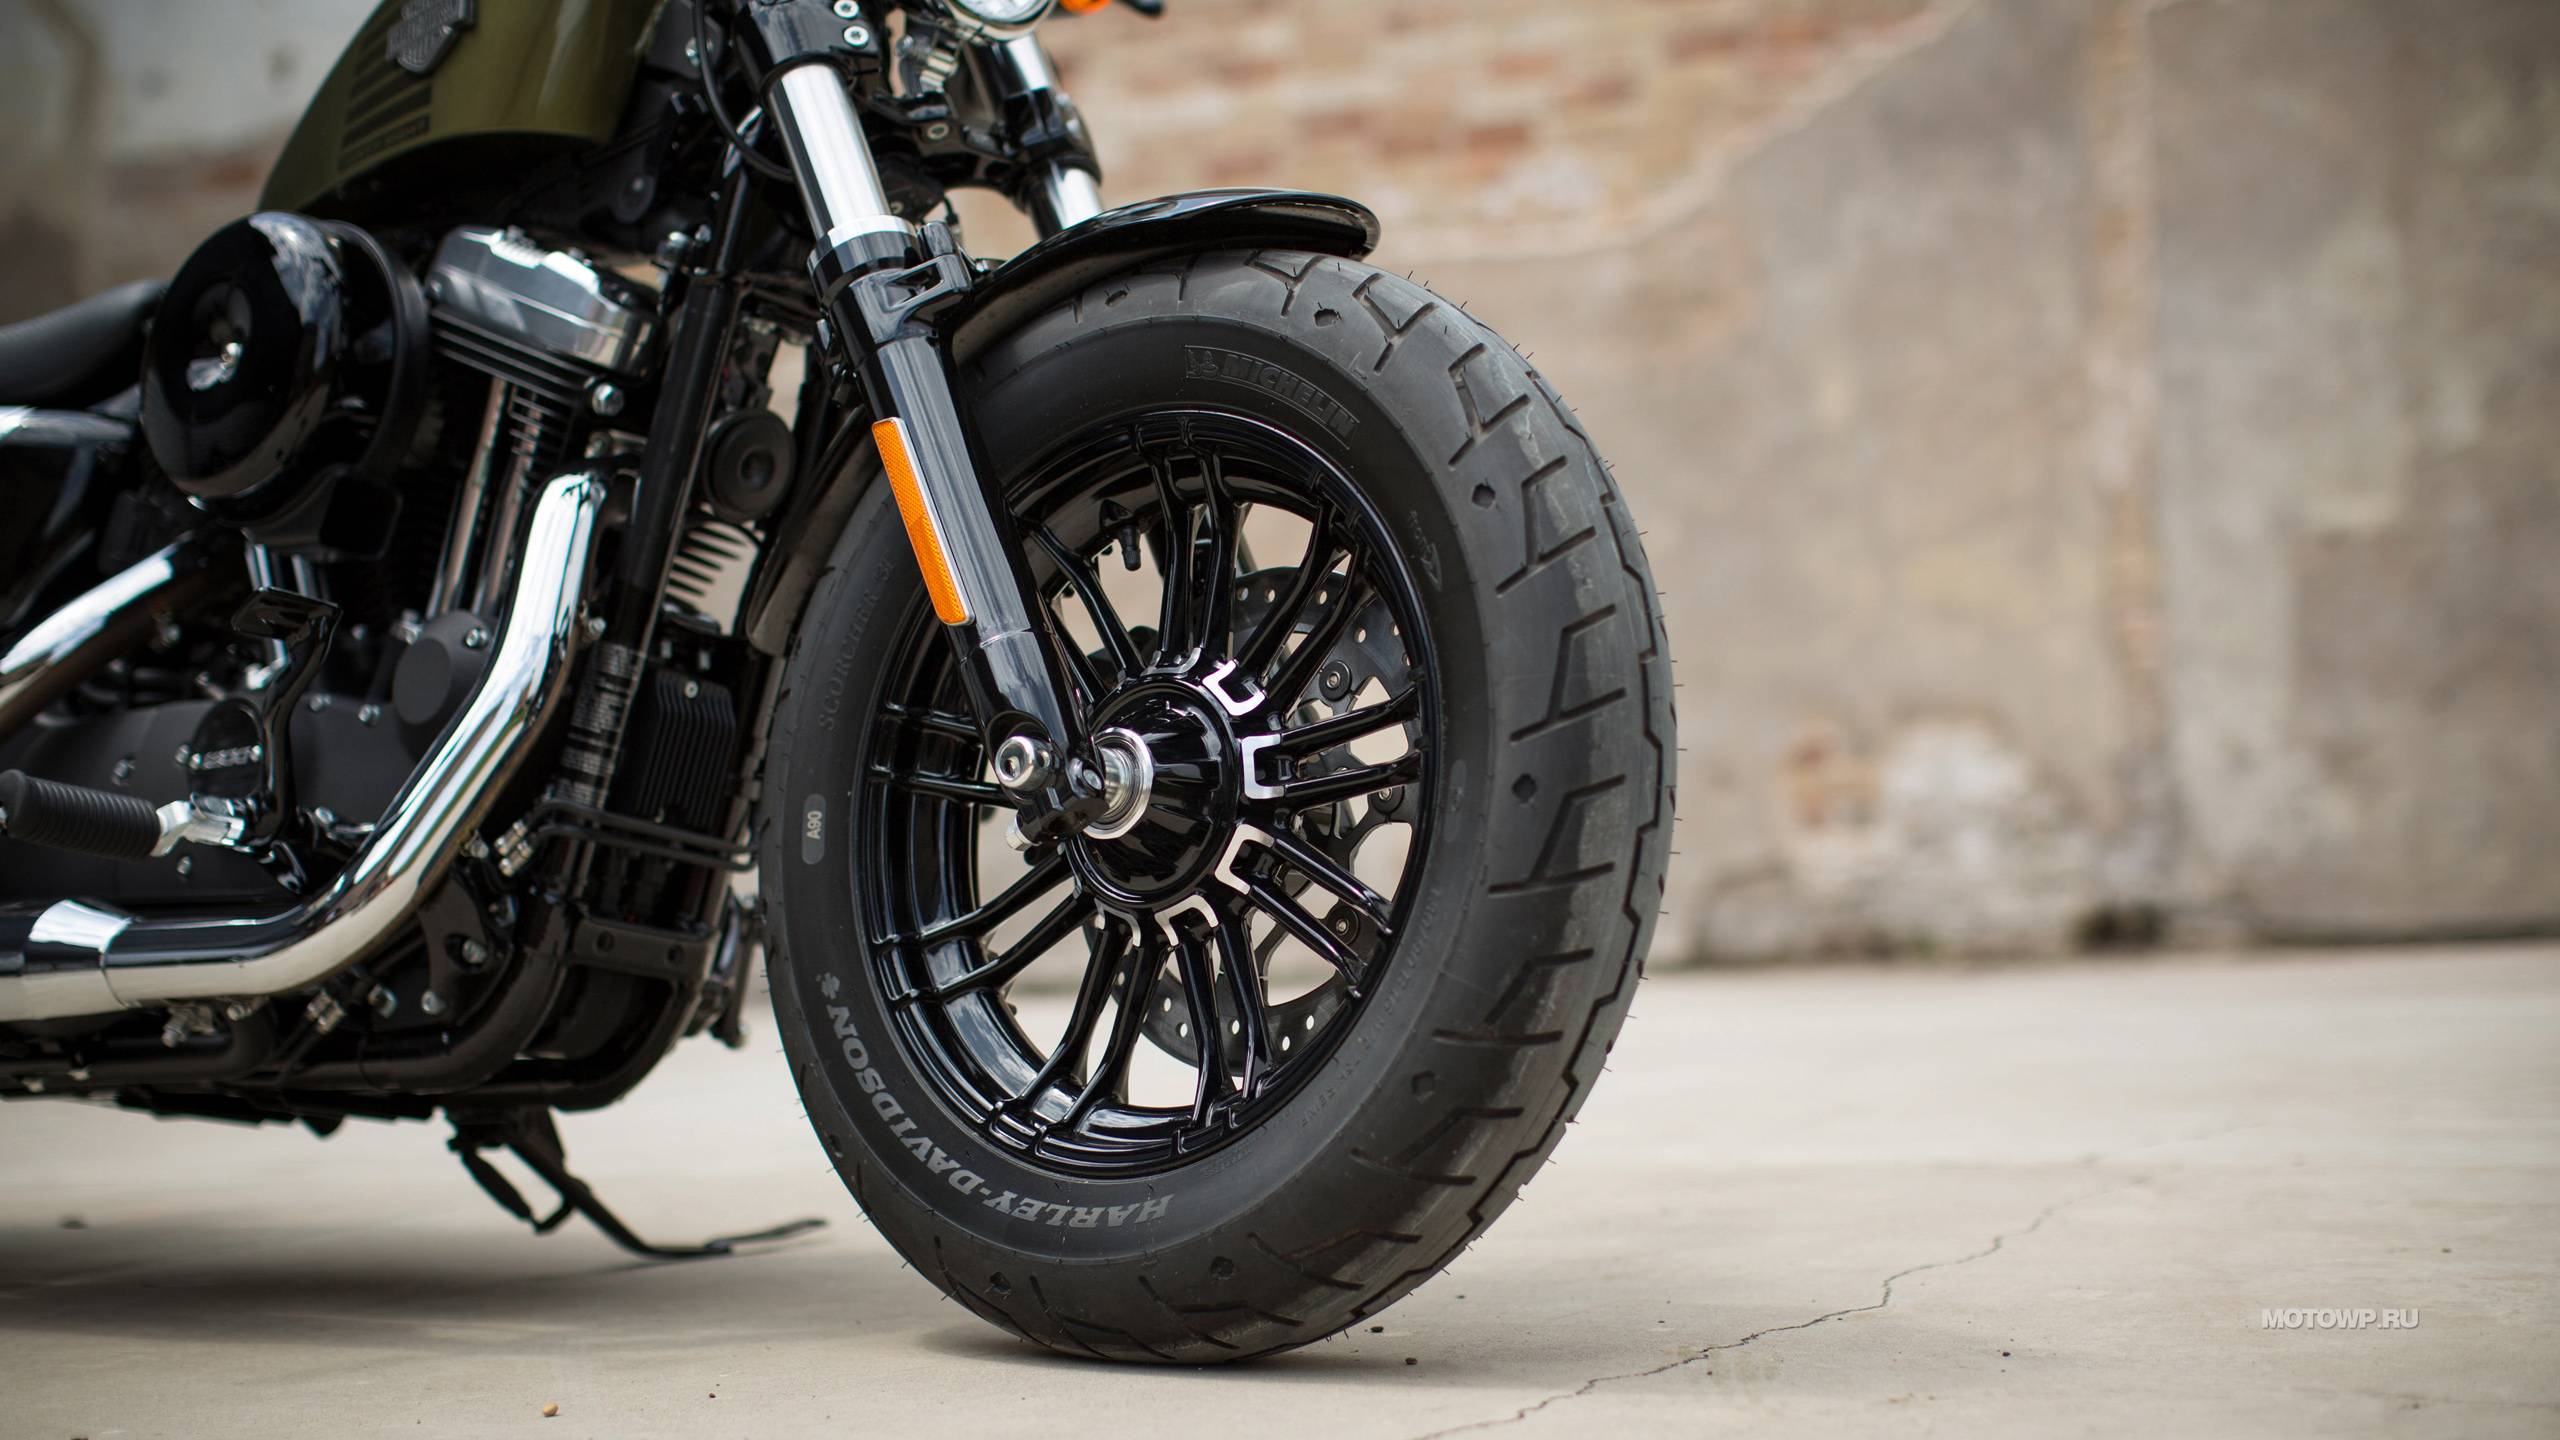 Harley-davidson sportster forty-eight review | visordown